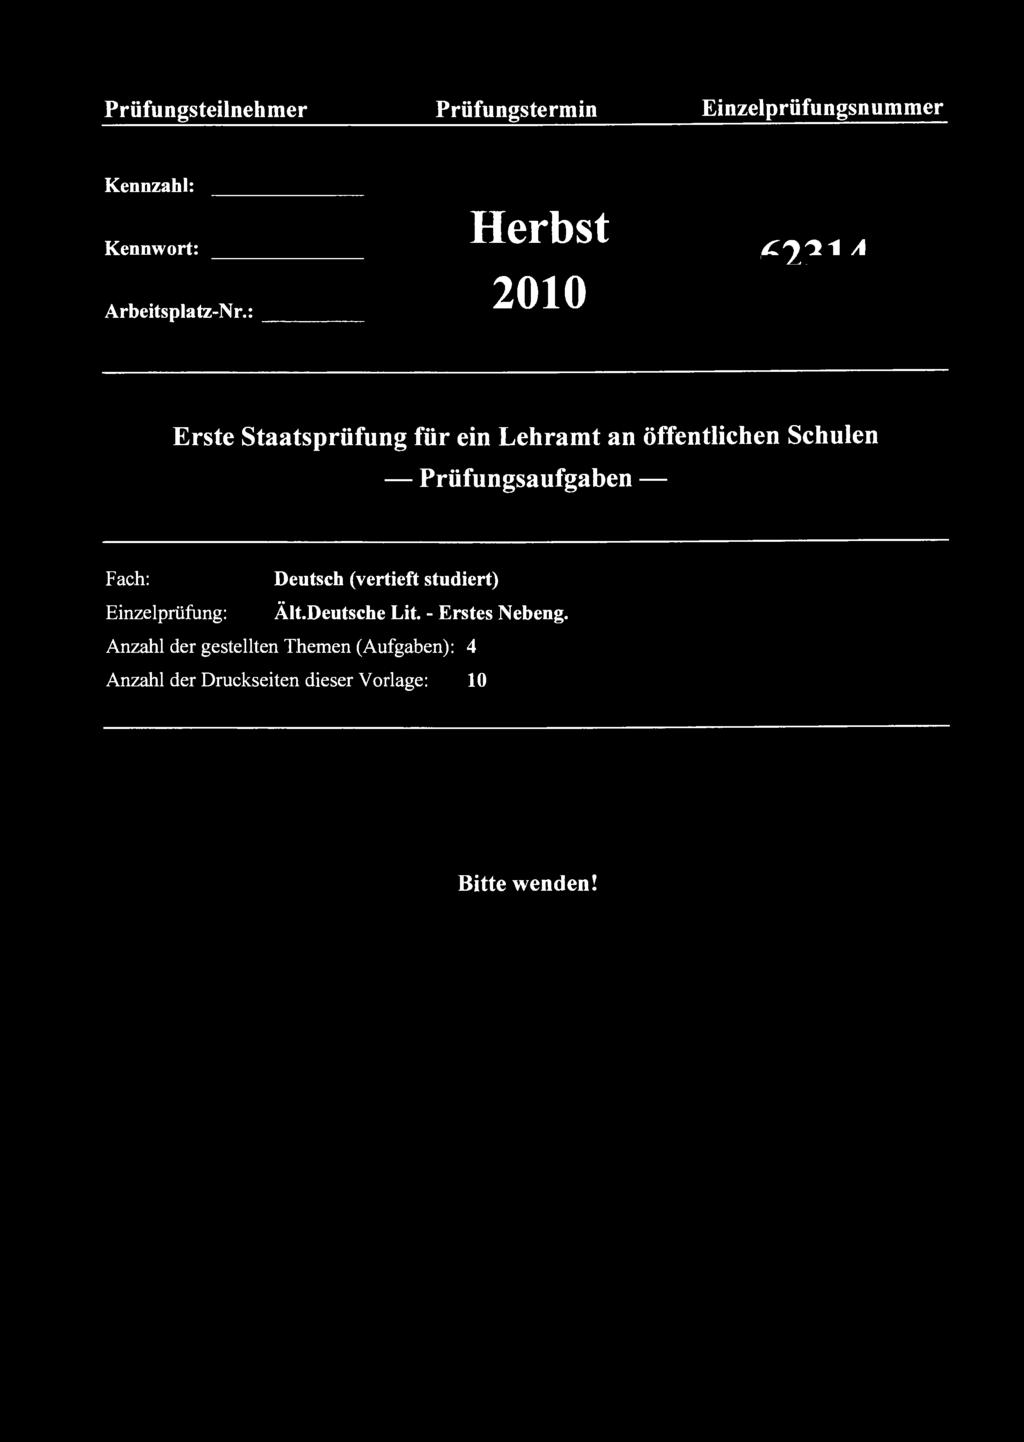 Prüfungsteilnehmer Prüfungstermin Einzelprüfungsnummer Kennzahl: Kennwort: Herbst ^ ^ liyila Arbeitsplatz-Nr.